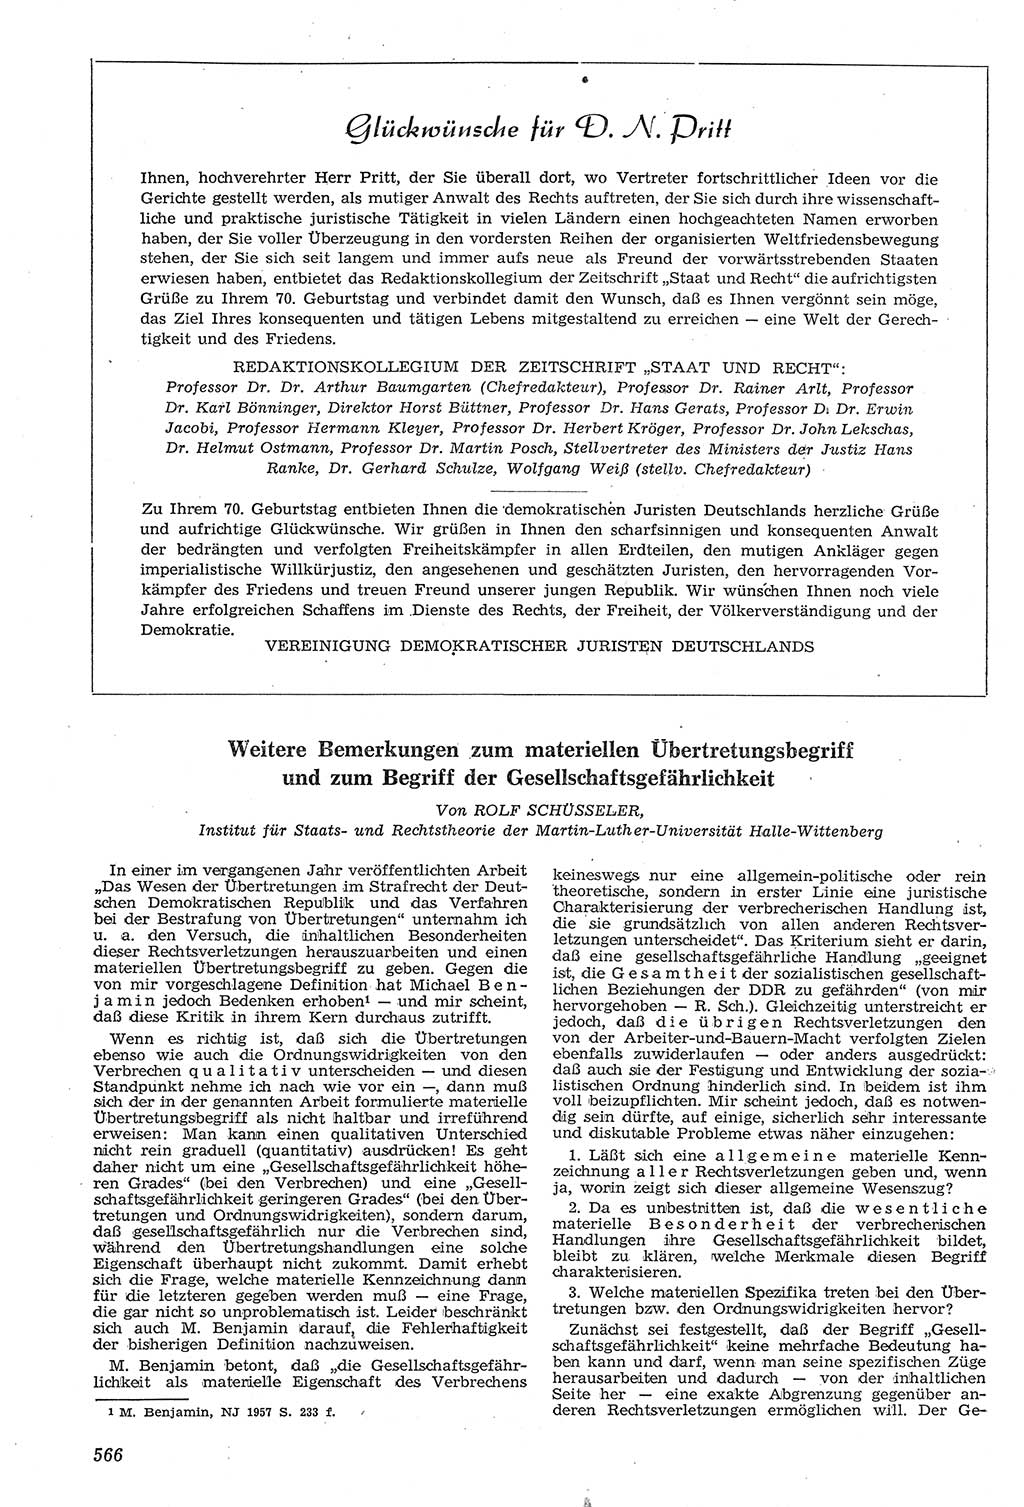 Neue Justiz (NJ), Zeitschrift für Recht und Rechtswissenschaft [Deutsche Demokratische Republik (DDR)], 11. Jahrgang 1957, Seite 566 (NJ DDR 1957, S. 566)